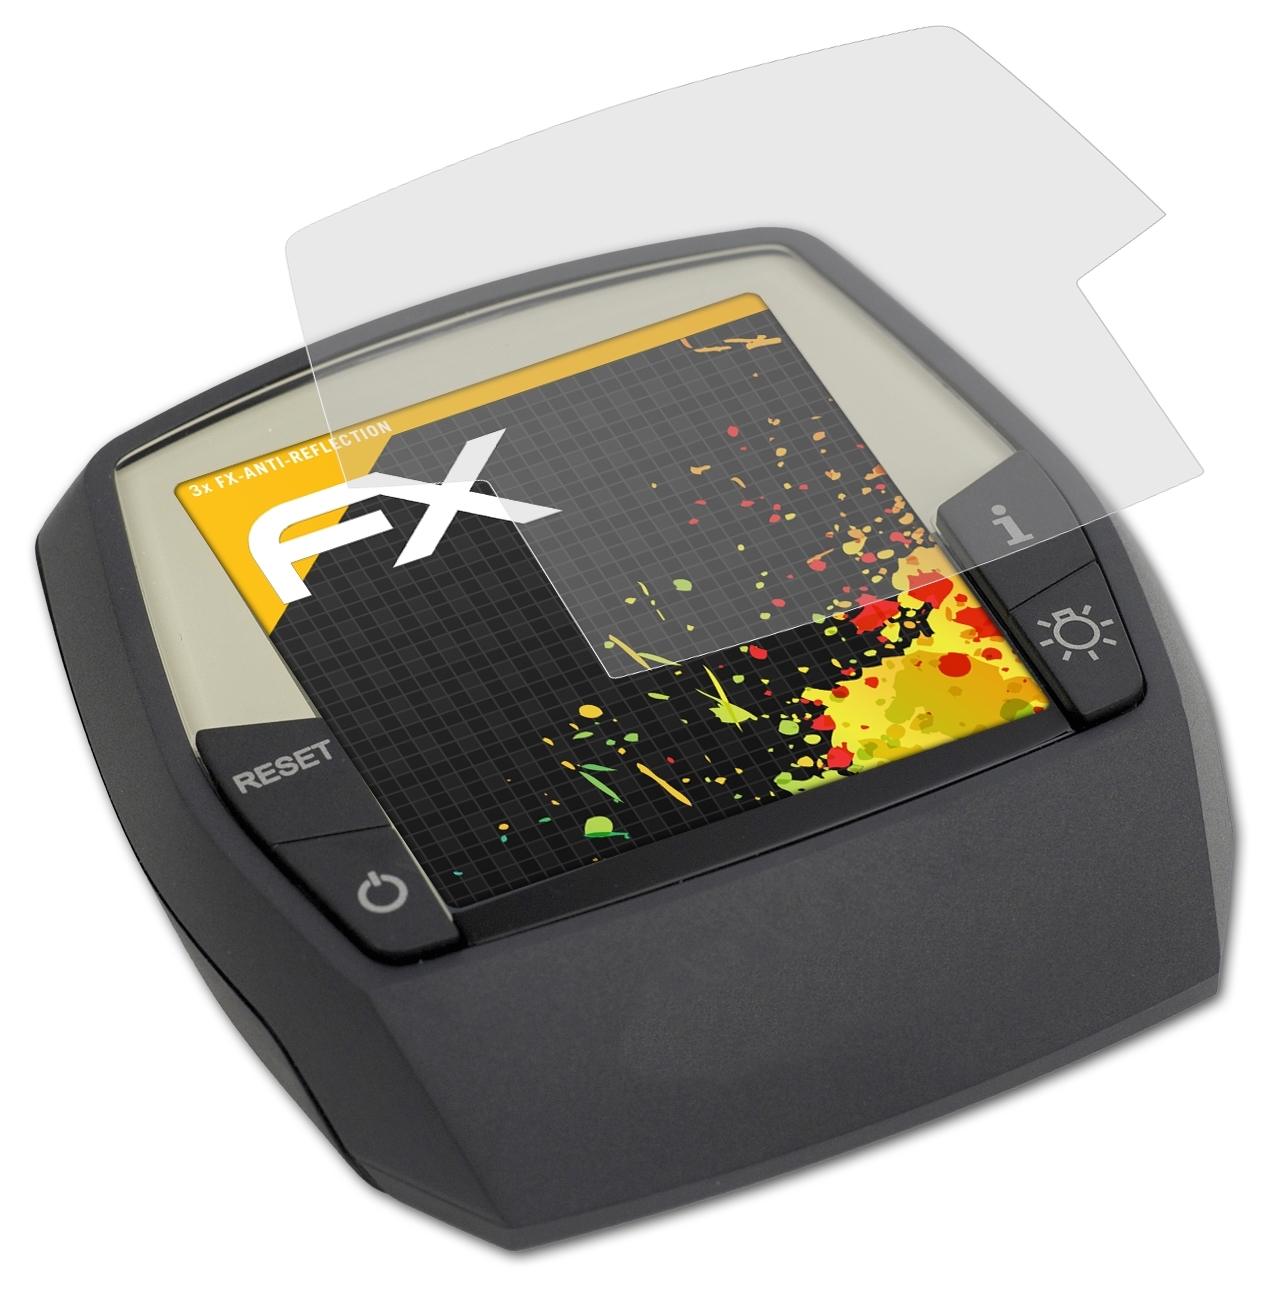 FX-Antireflex 3x Intuvia) Bosch Displayschutz(für ATFOLIX